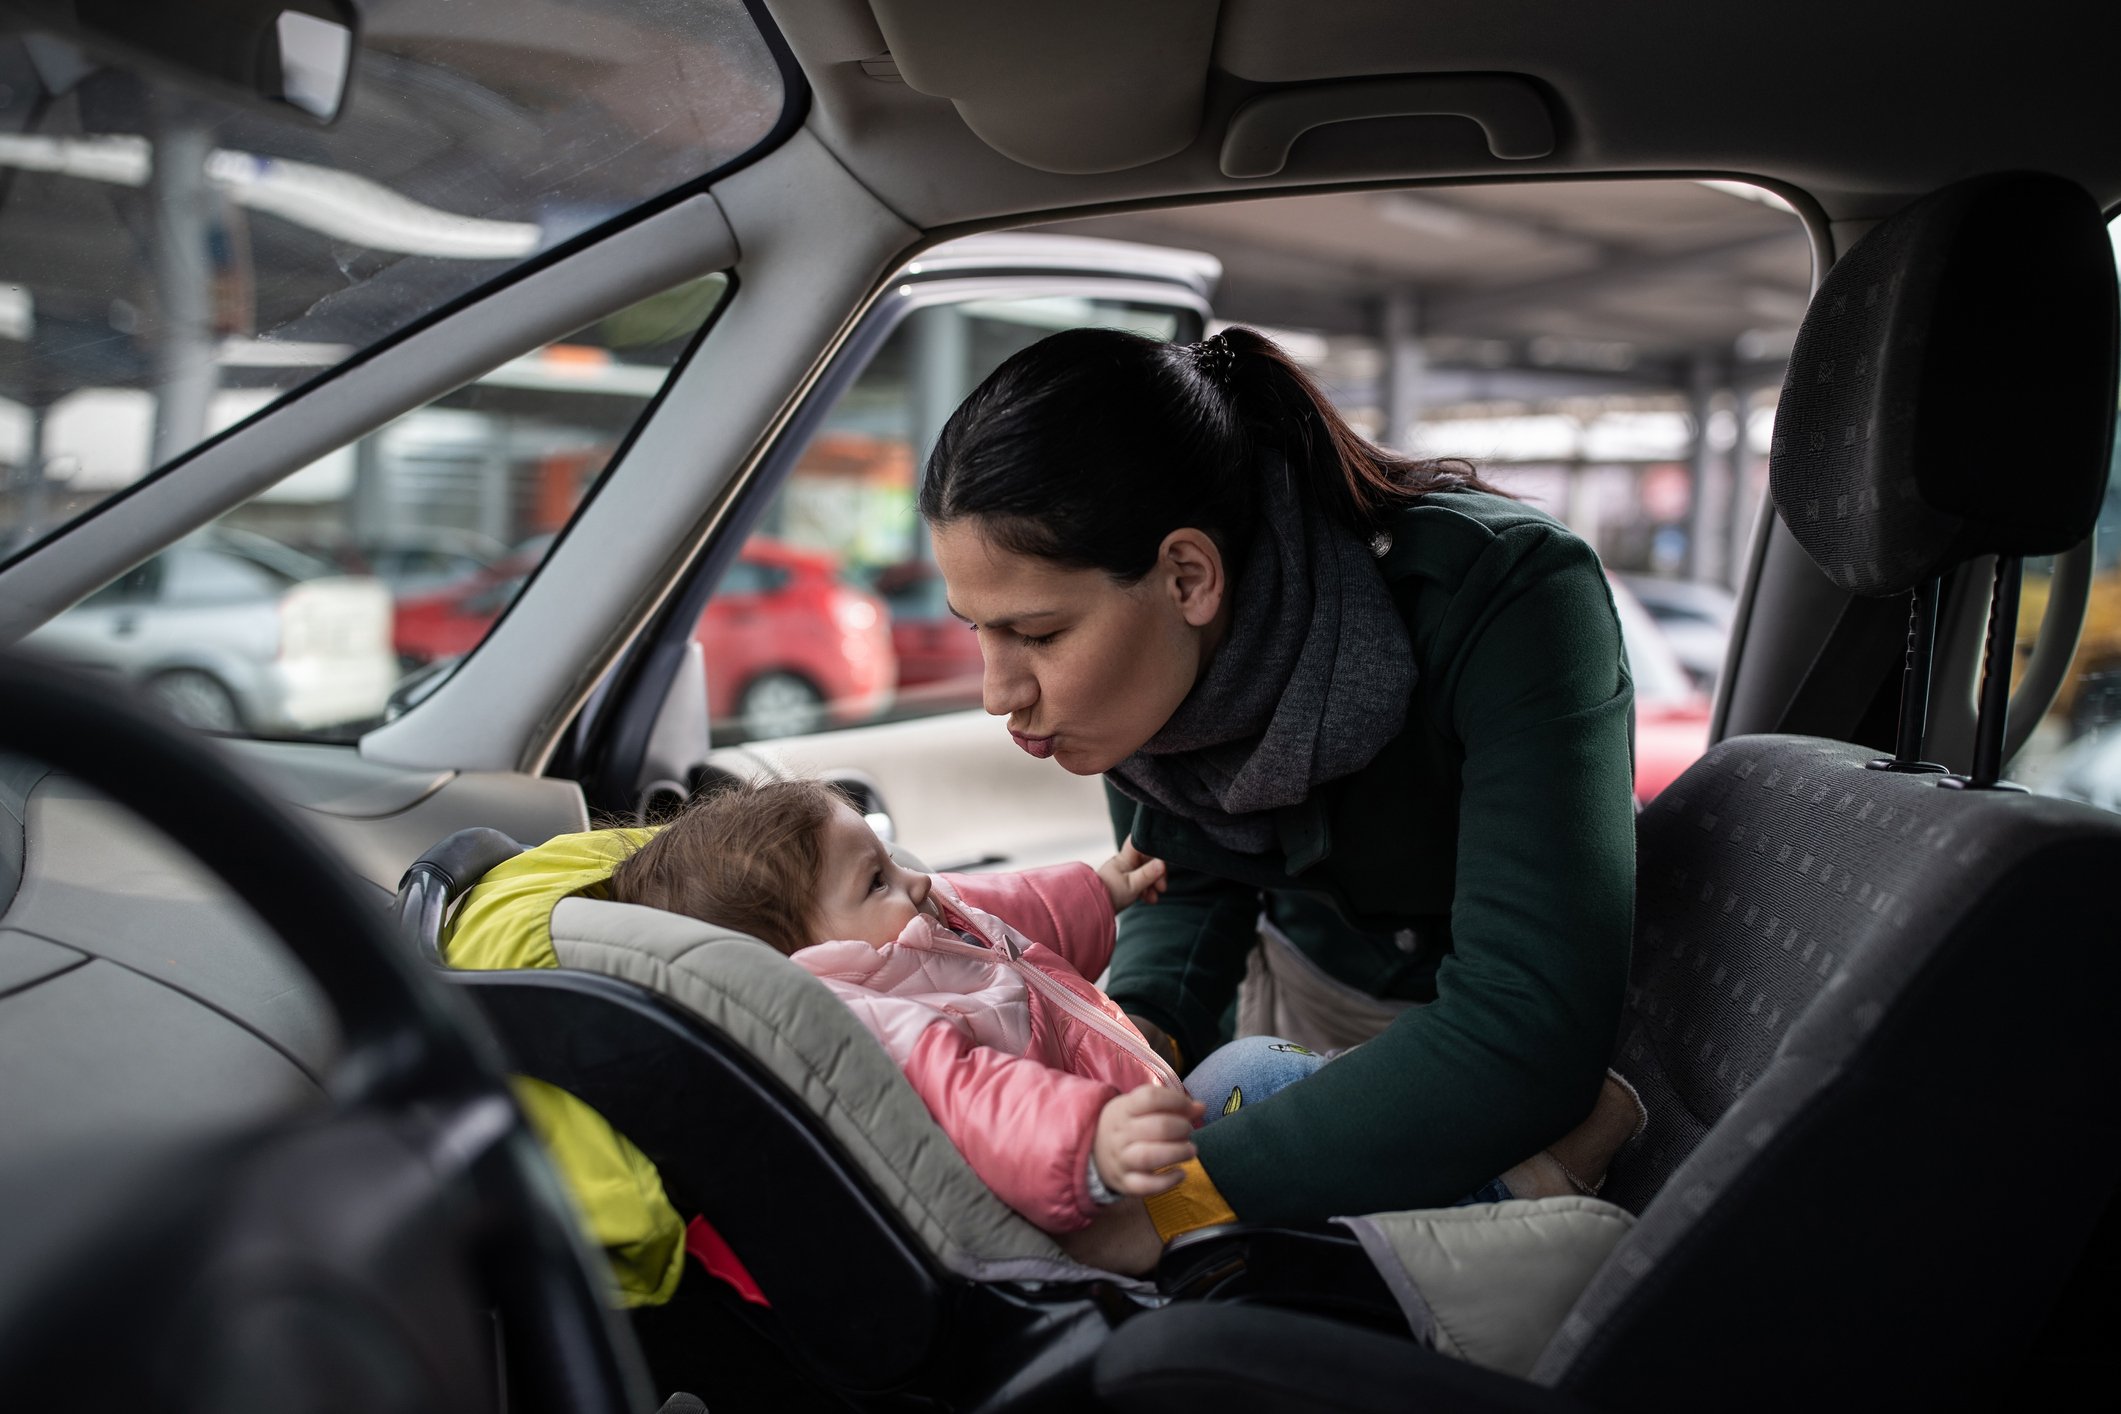 Safety first: Diese 9 Dinge sind im Auto mit Kindern mega gefährlich